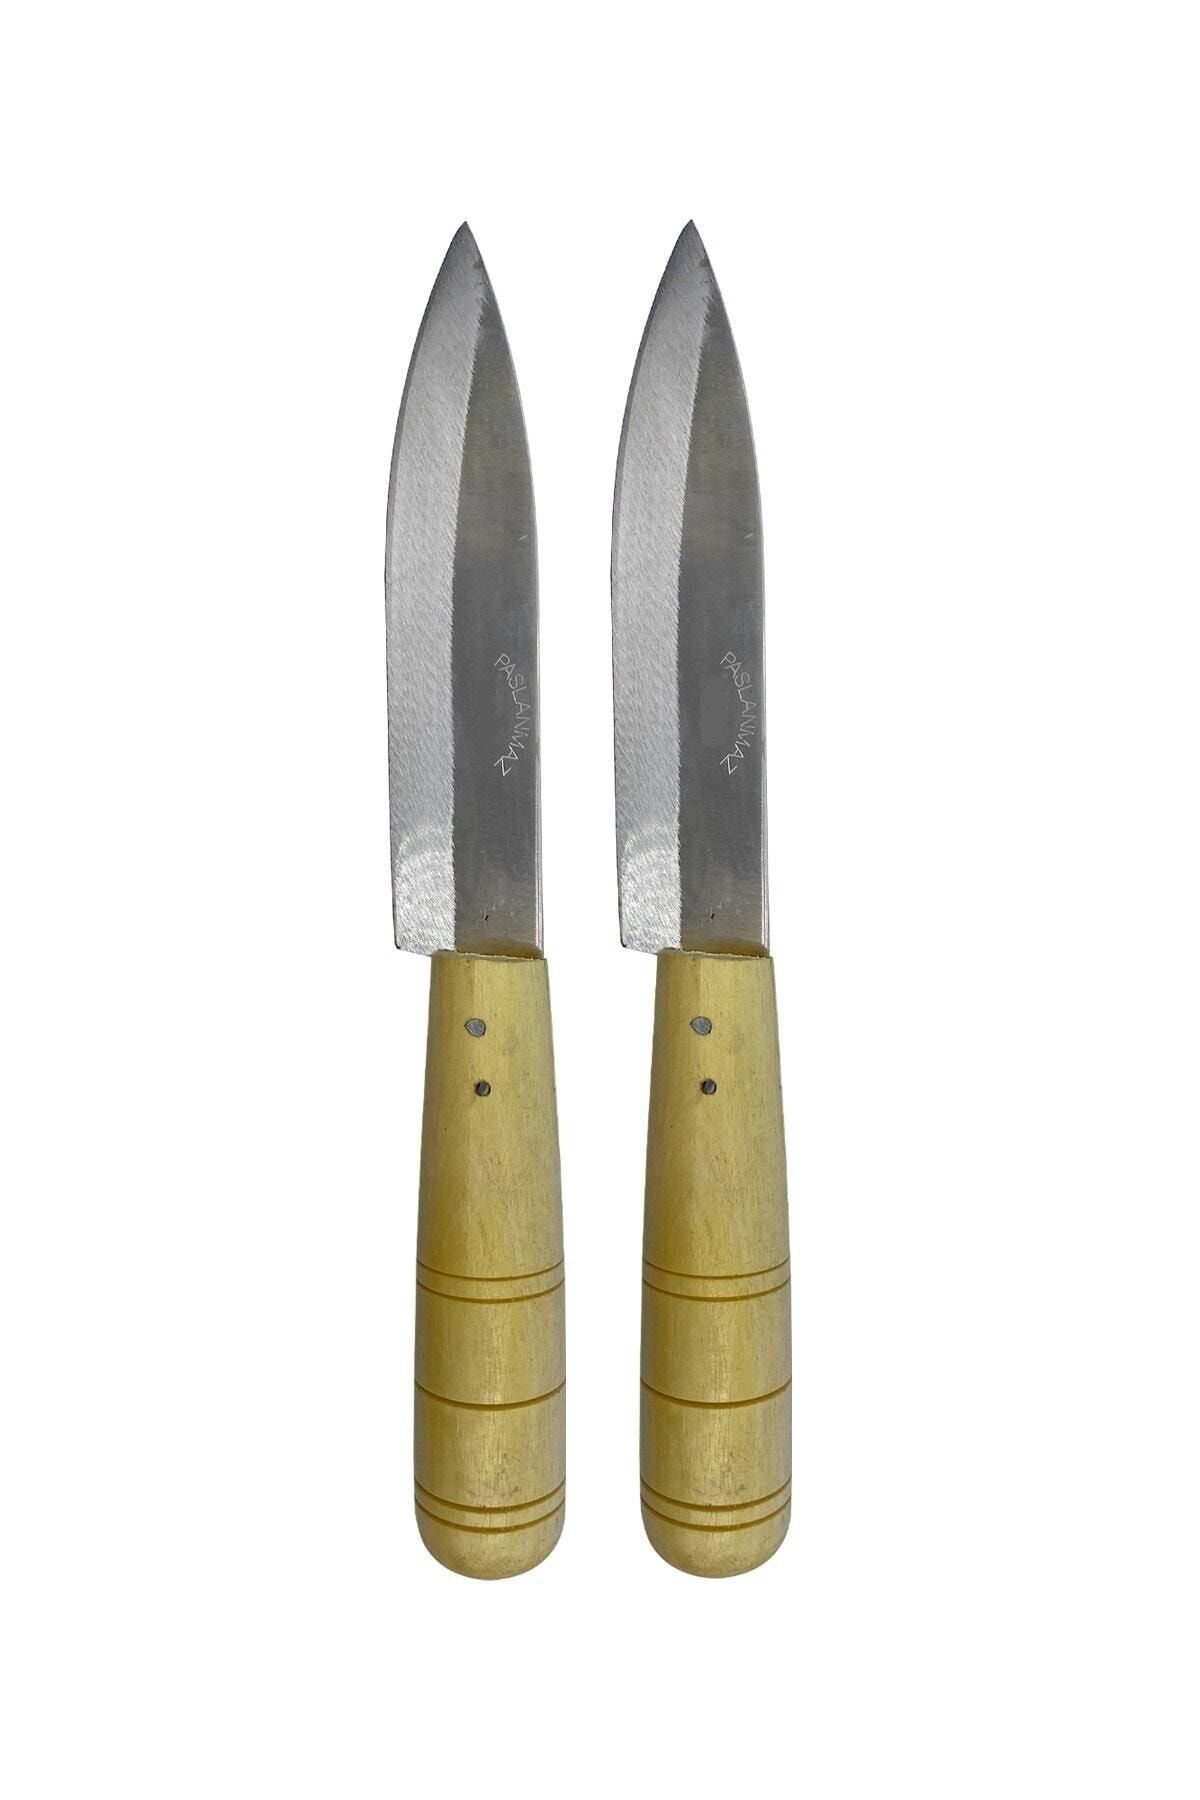 GÜZELYÜZ AVM Ahşap Saplı Mutfak Bıçağı Orta Boy 2 Adet 22cm Keskin Kaliteli 1.sınıf Ev Bıçak